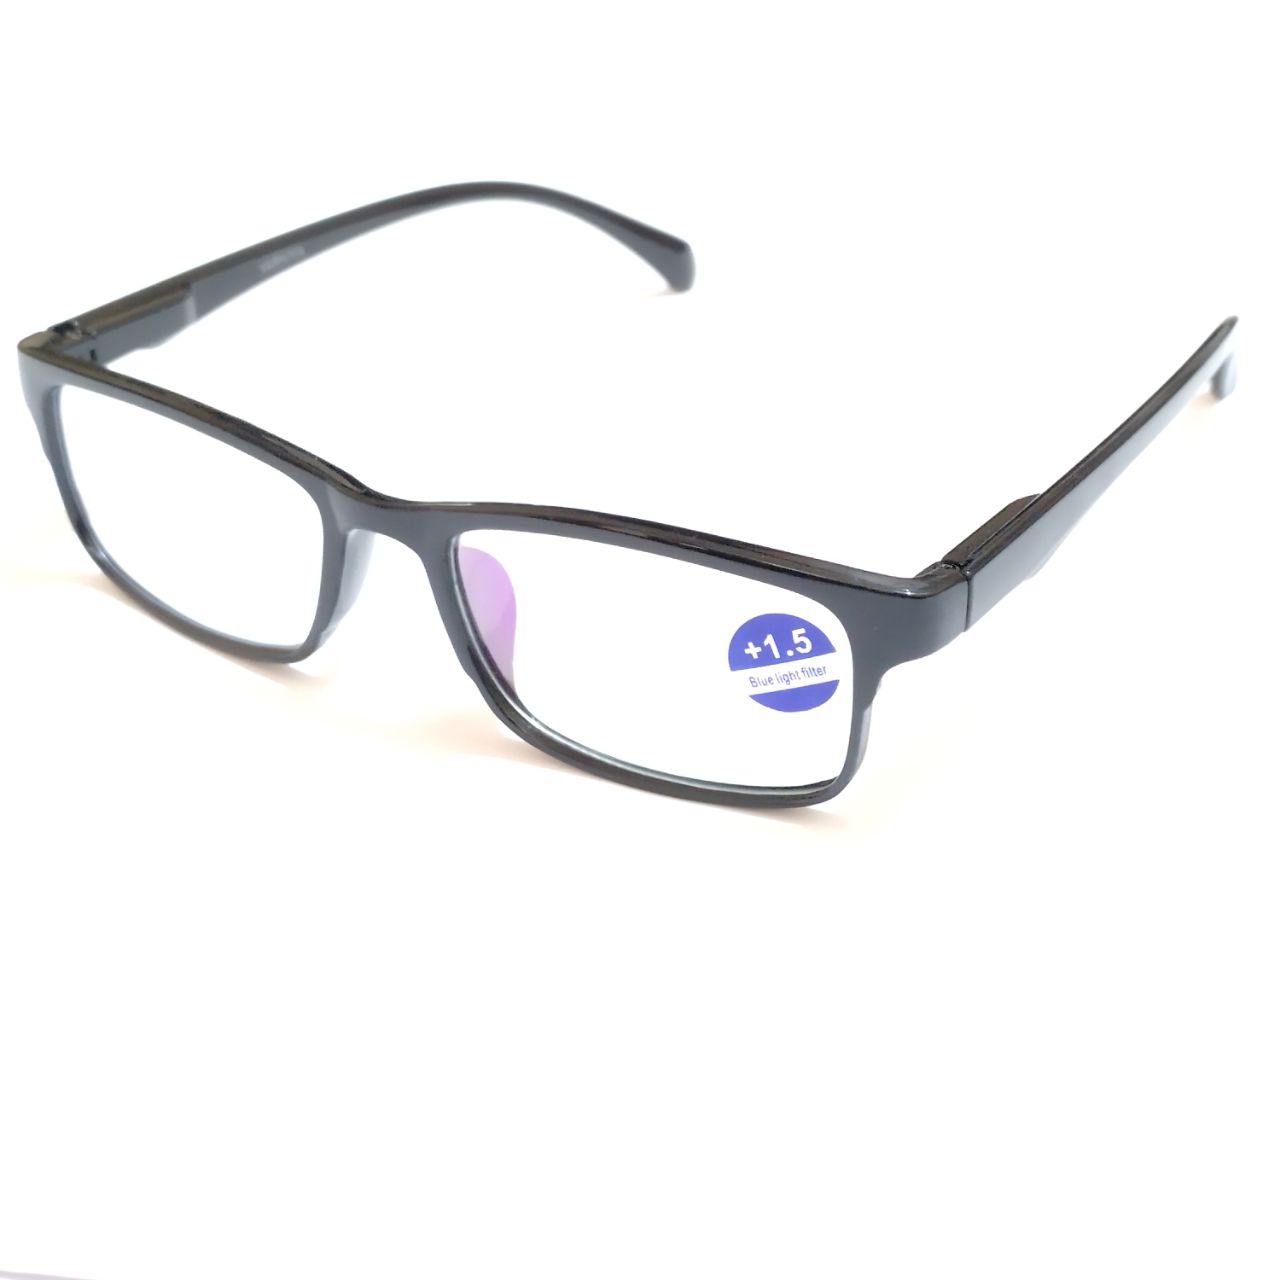 Black Lightweight Full Frame Blue Light Reading Glasses for Computer Use